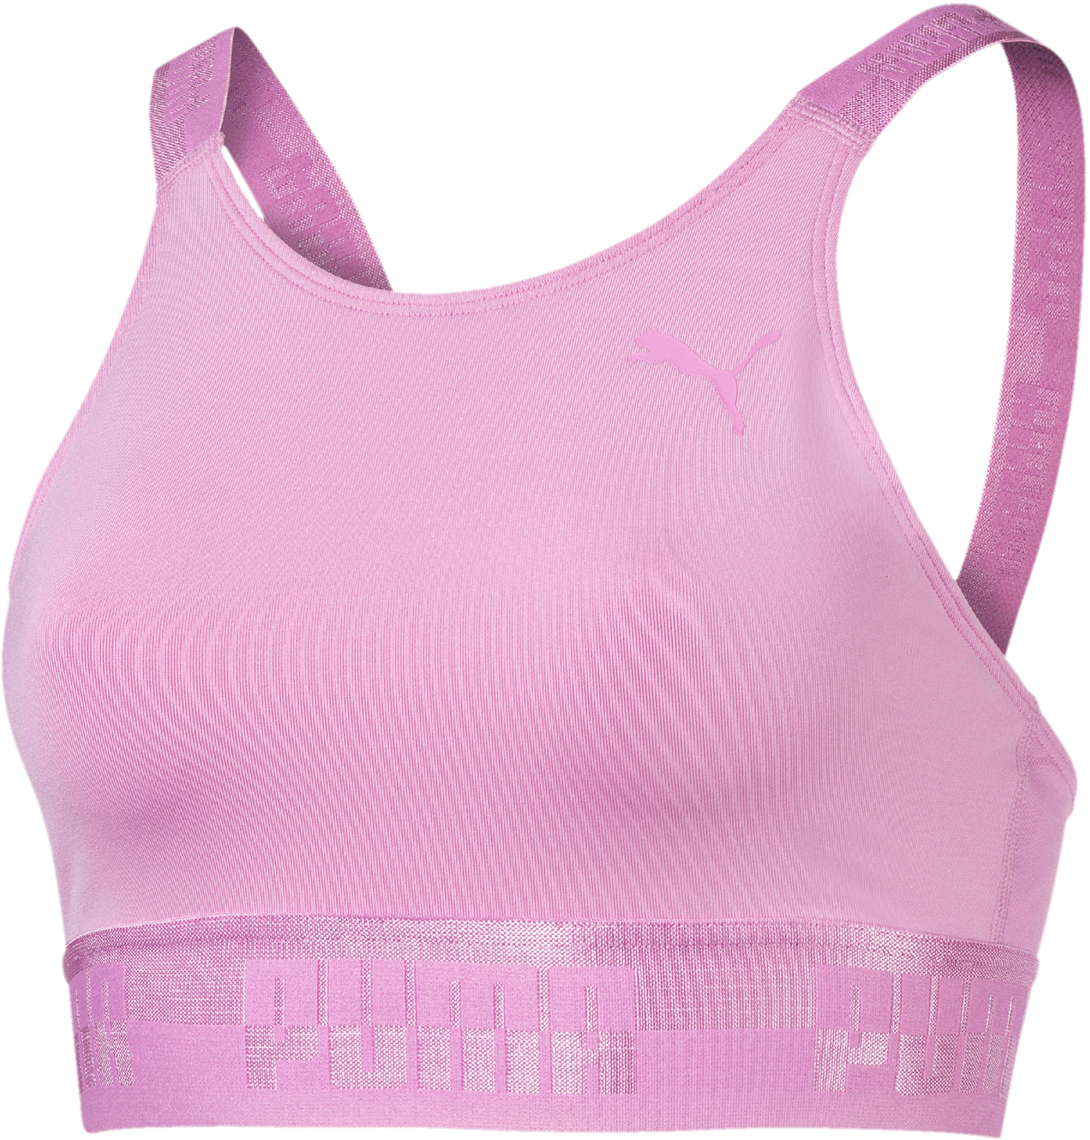 Топ-бра женский Puma Soft Sport Crop Top, цвет: розовый. 85204241. Размер S (42/44)